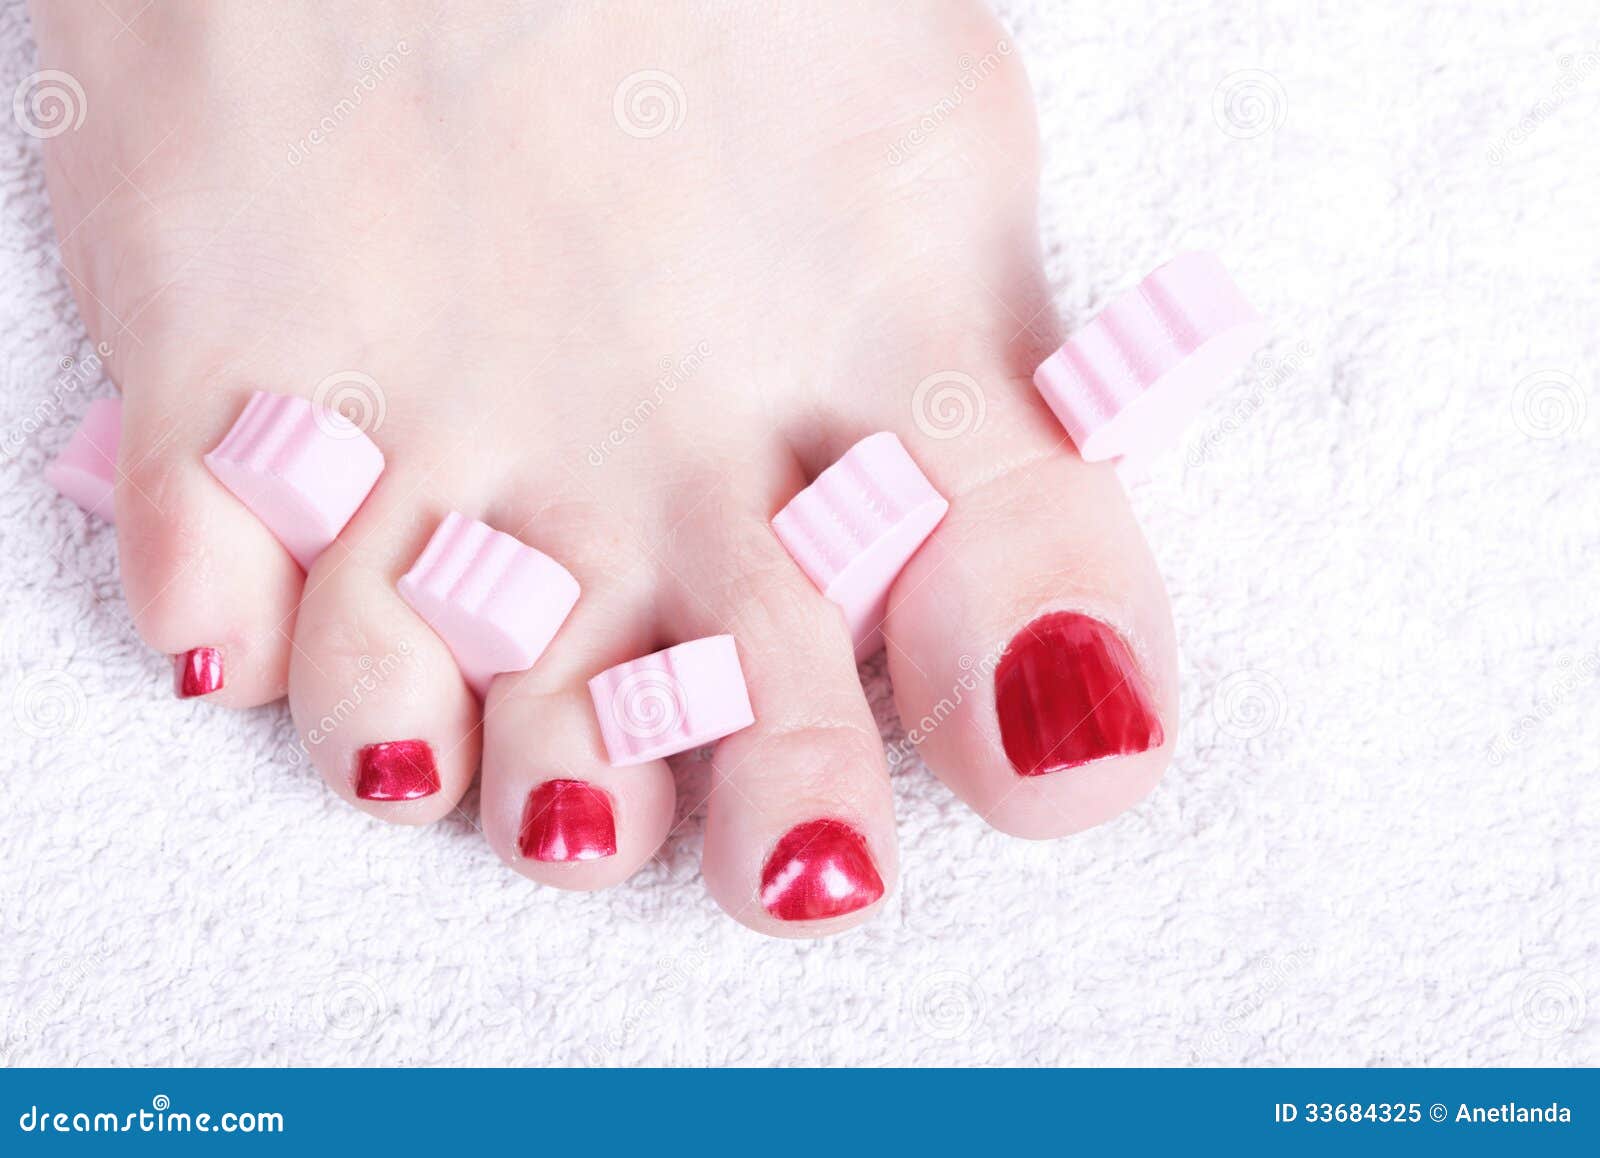 Female Feet Red Polished Nails Stock Image - Image of drying, elegant ...